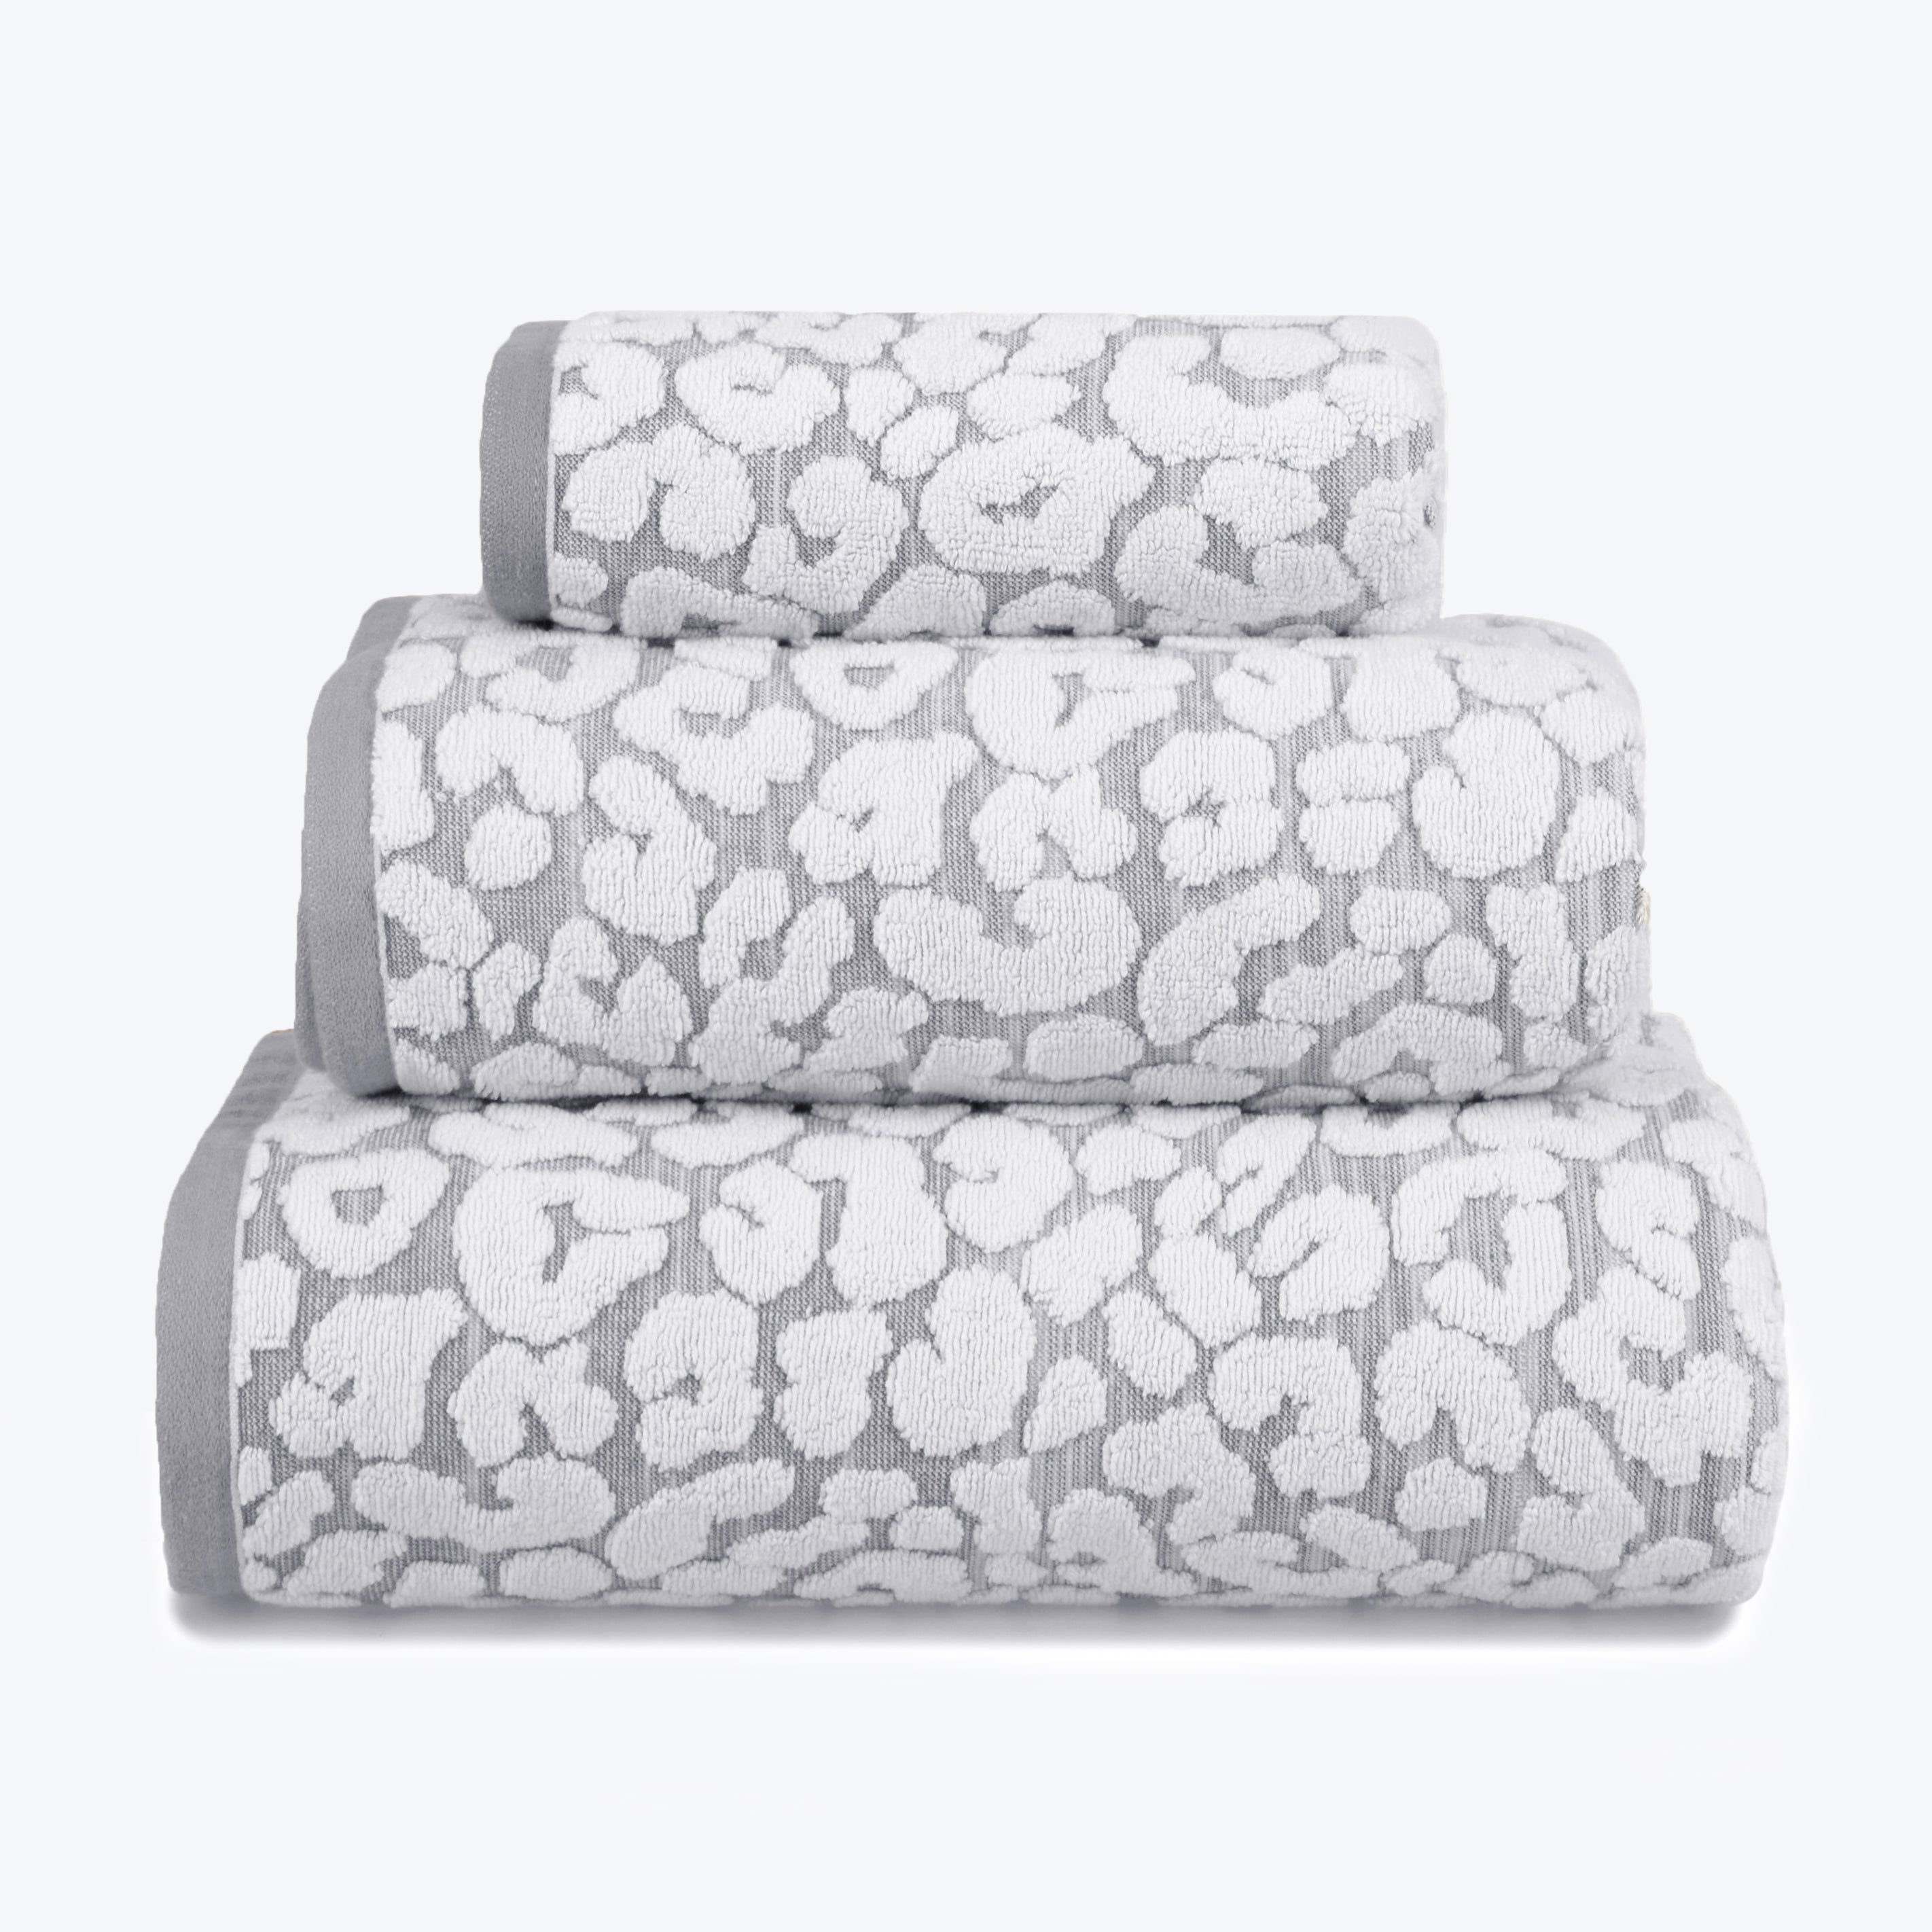 Grey Towel Set - Leopard Print Bathroom towels